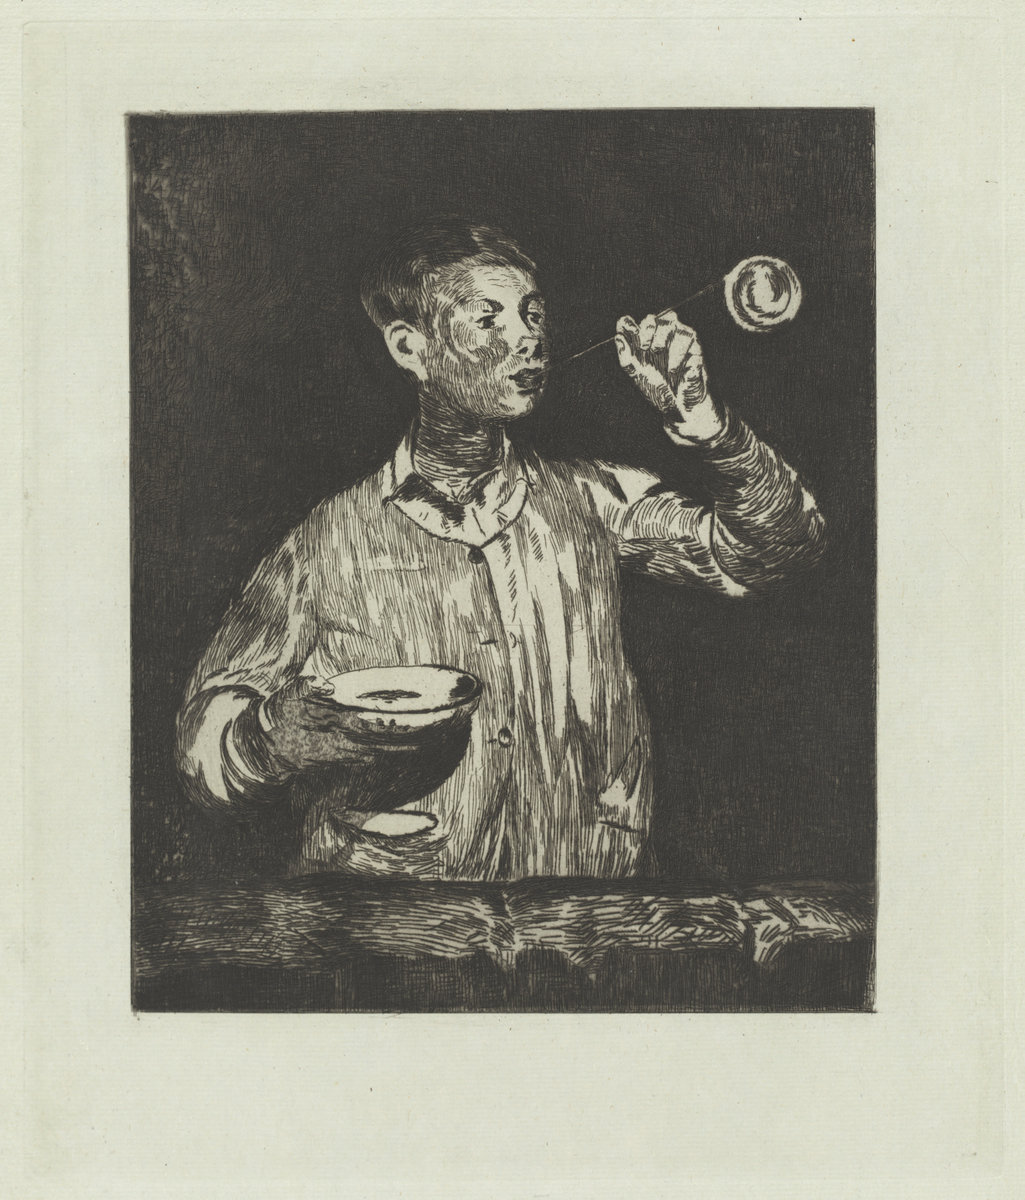 Èdouard Manet, The Boy with Soap Bubbles (L'enfant aux bulles de savon), 1868/1869